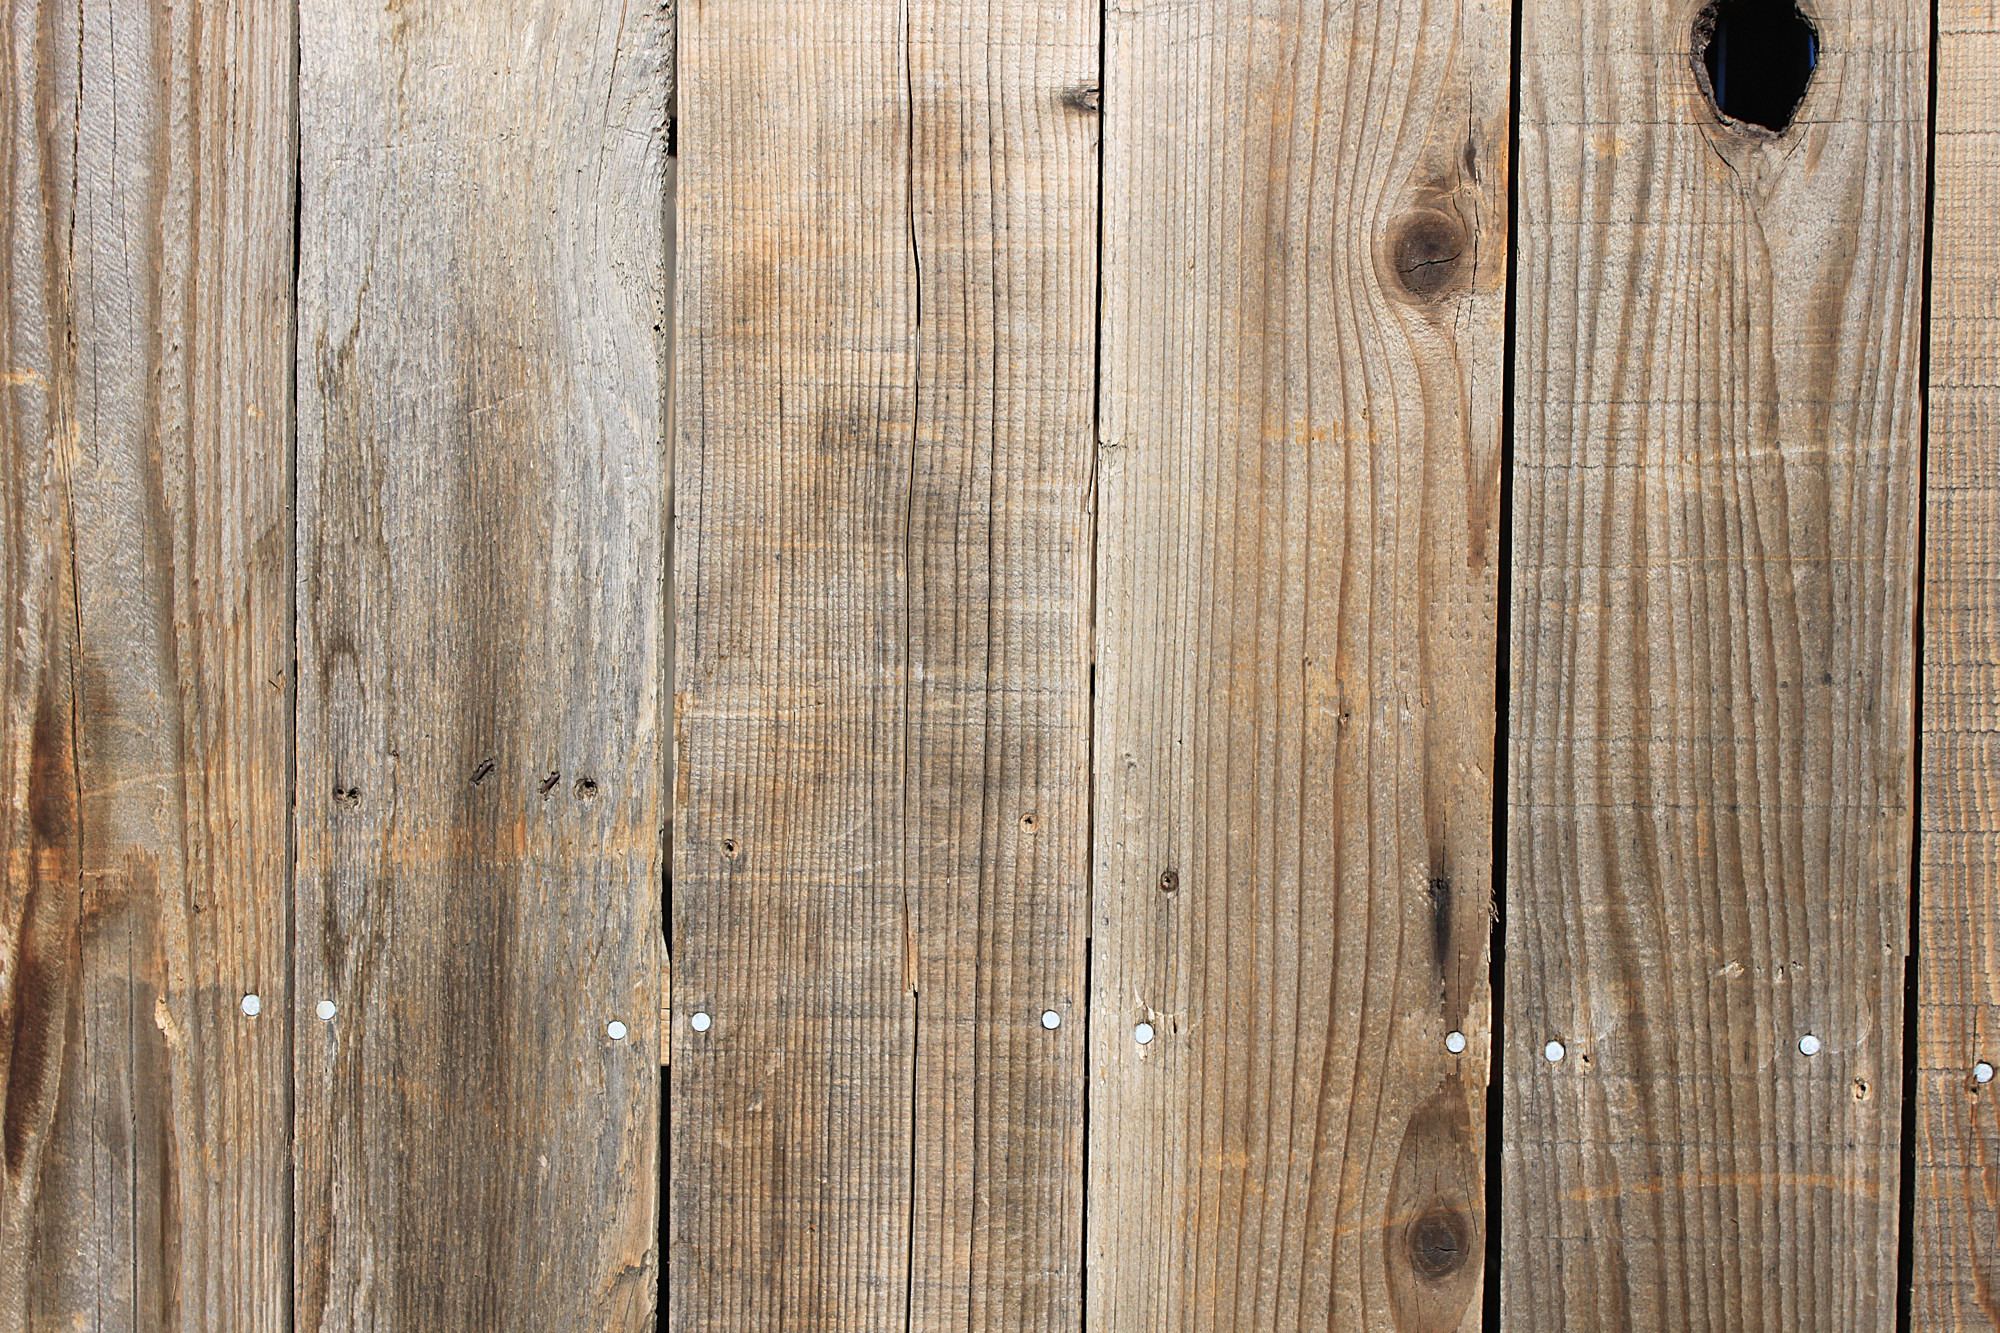 carta da parati rustica,legna,tavola,color legno,legno duro,pavimento in legno